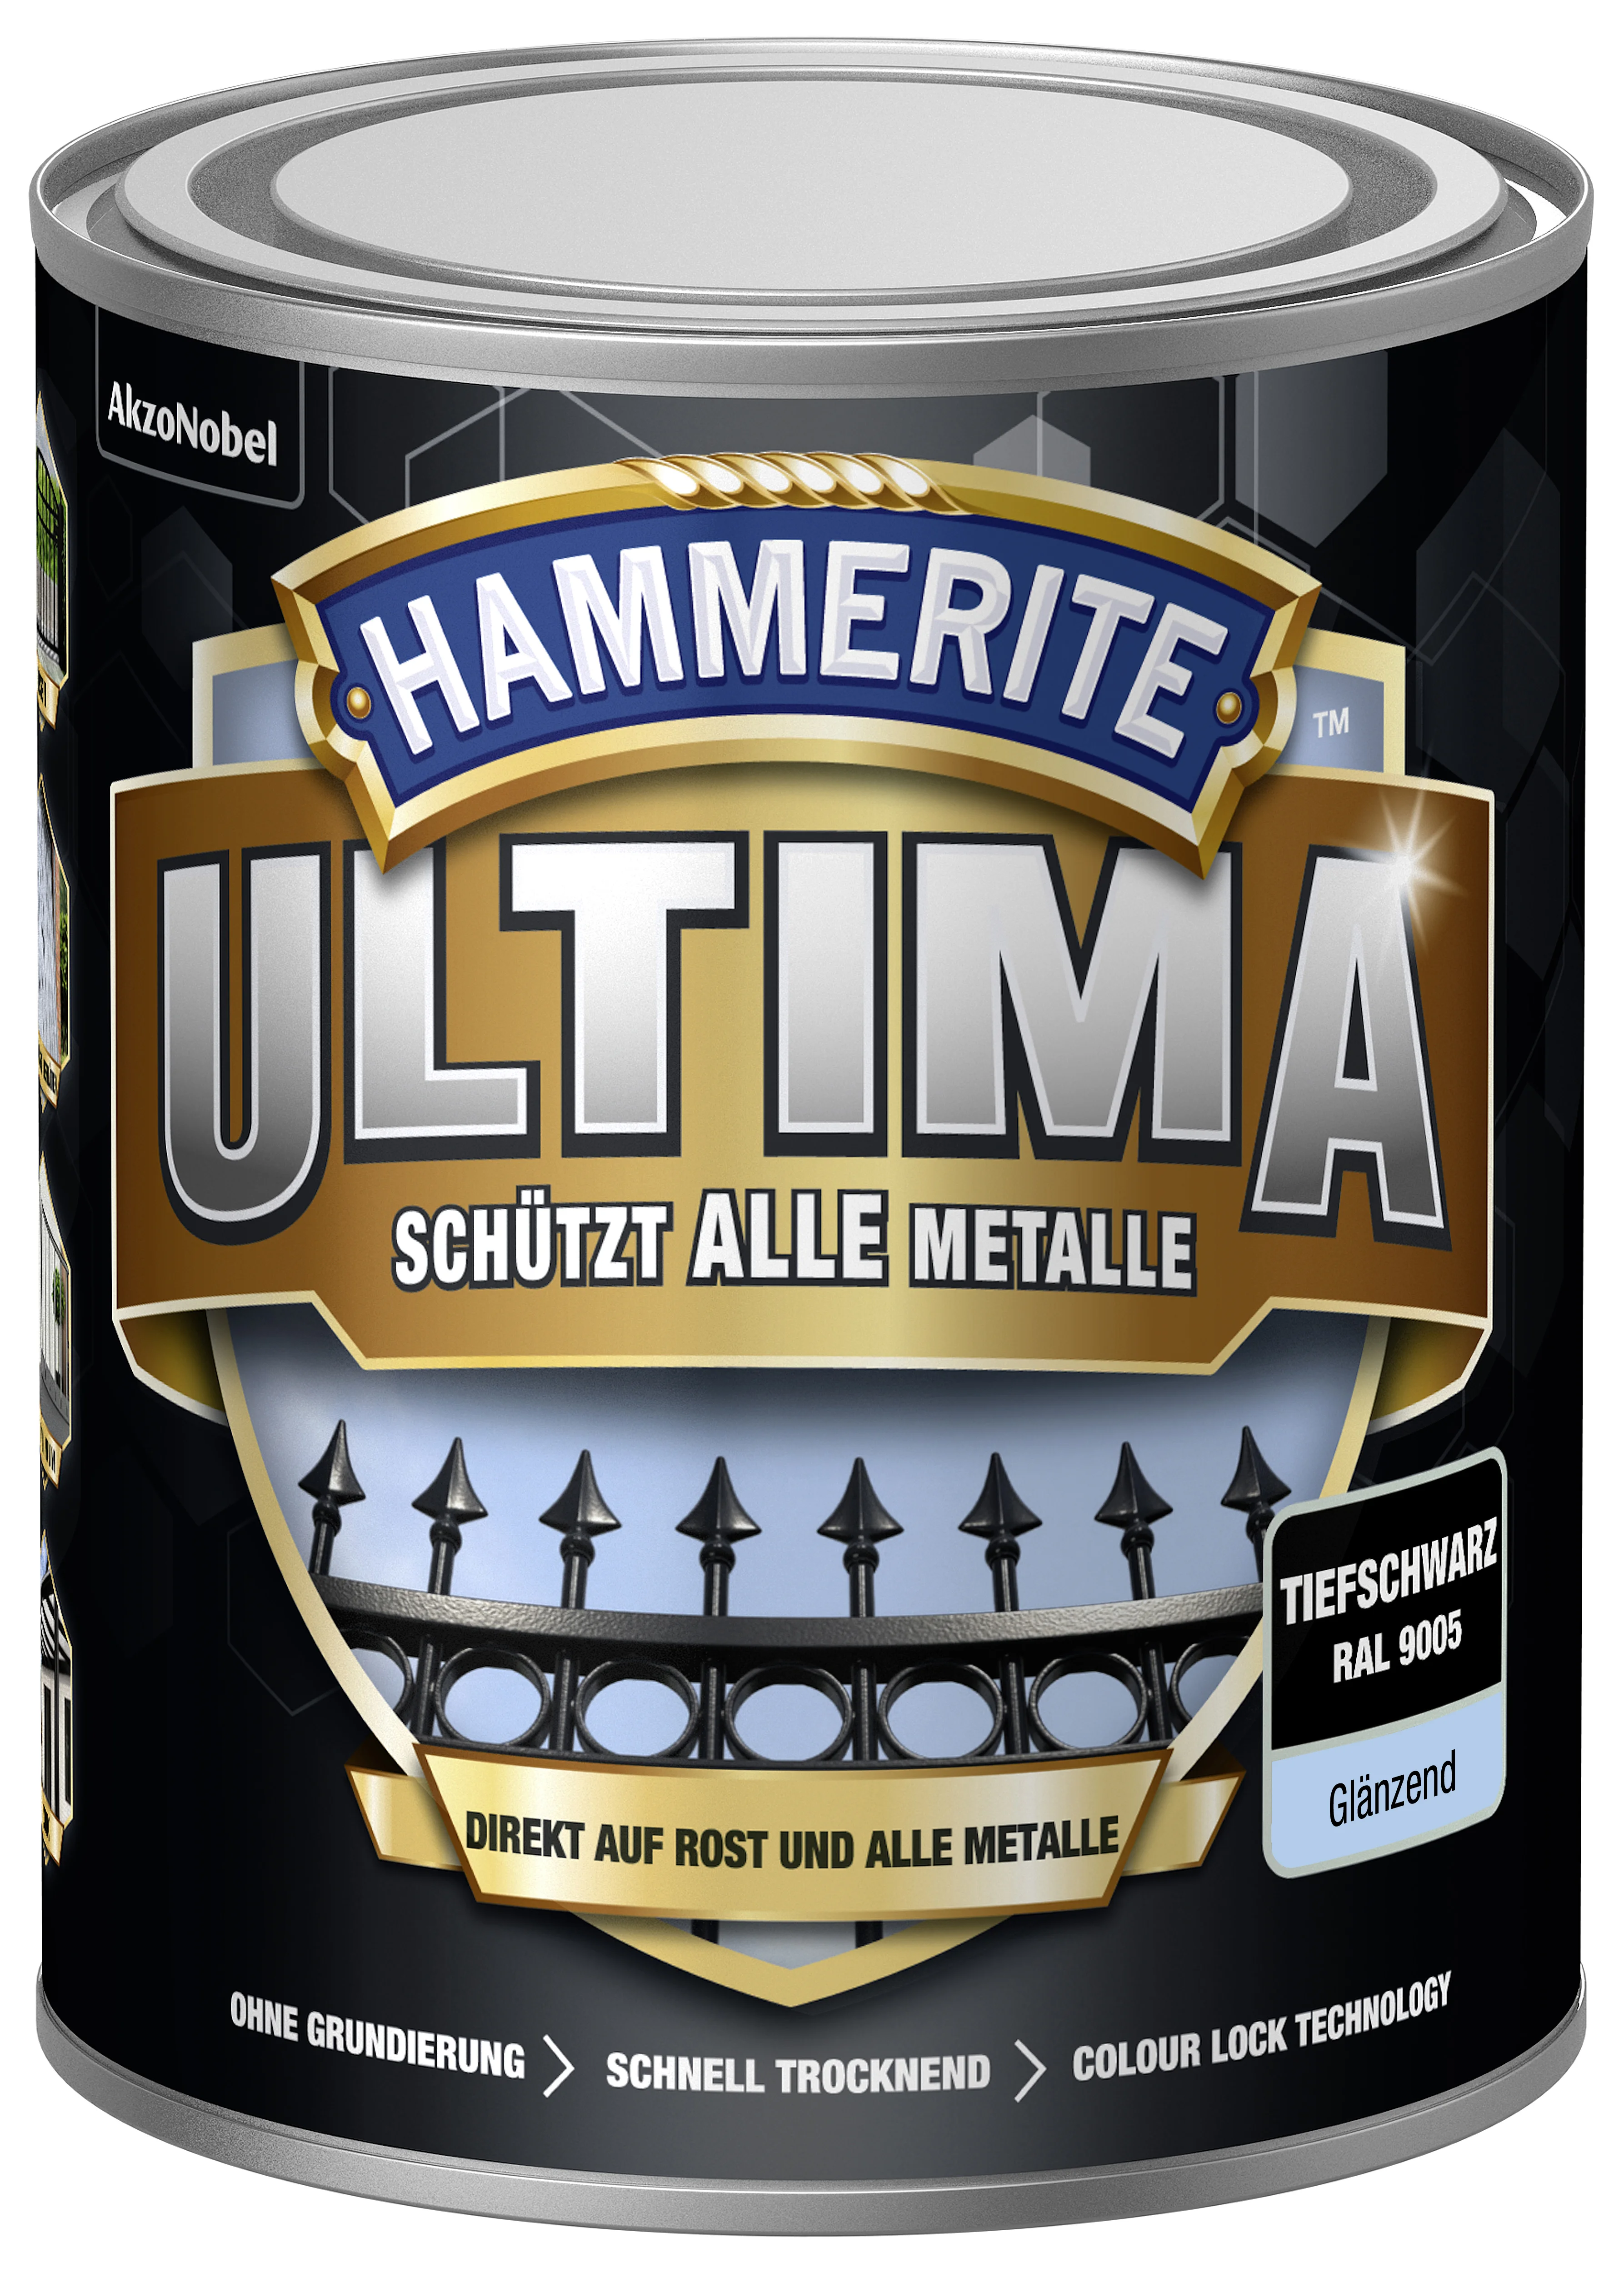 Hammerite Ultima Metallschutzlack Tiefschwarz glänzend 750 ml